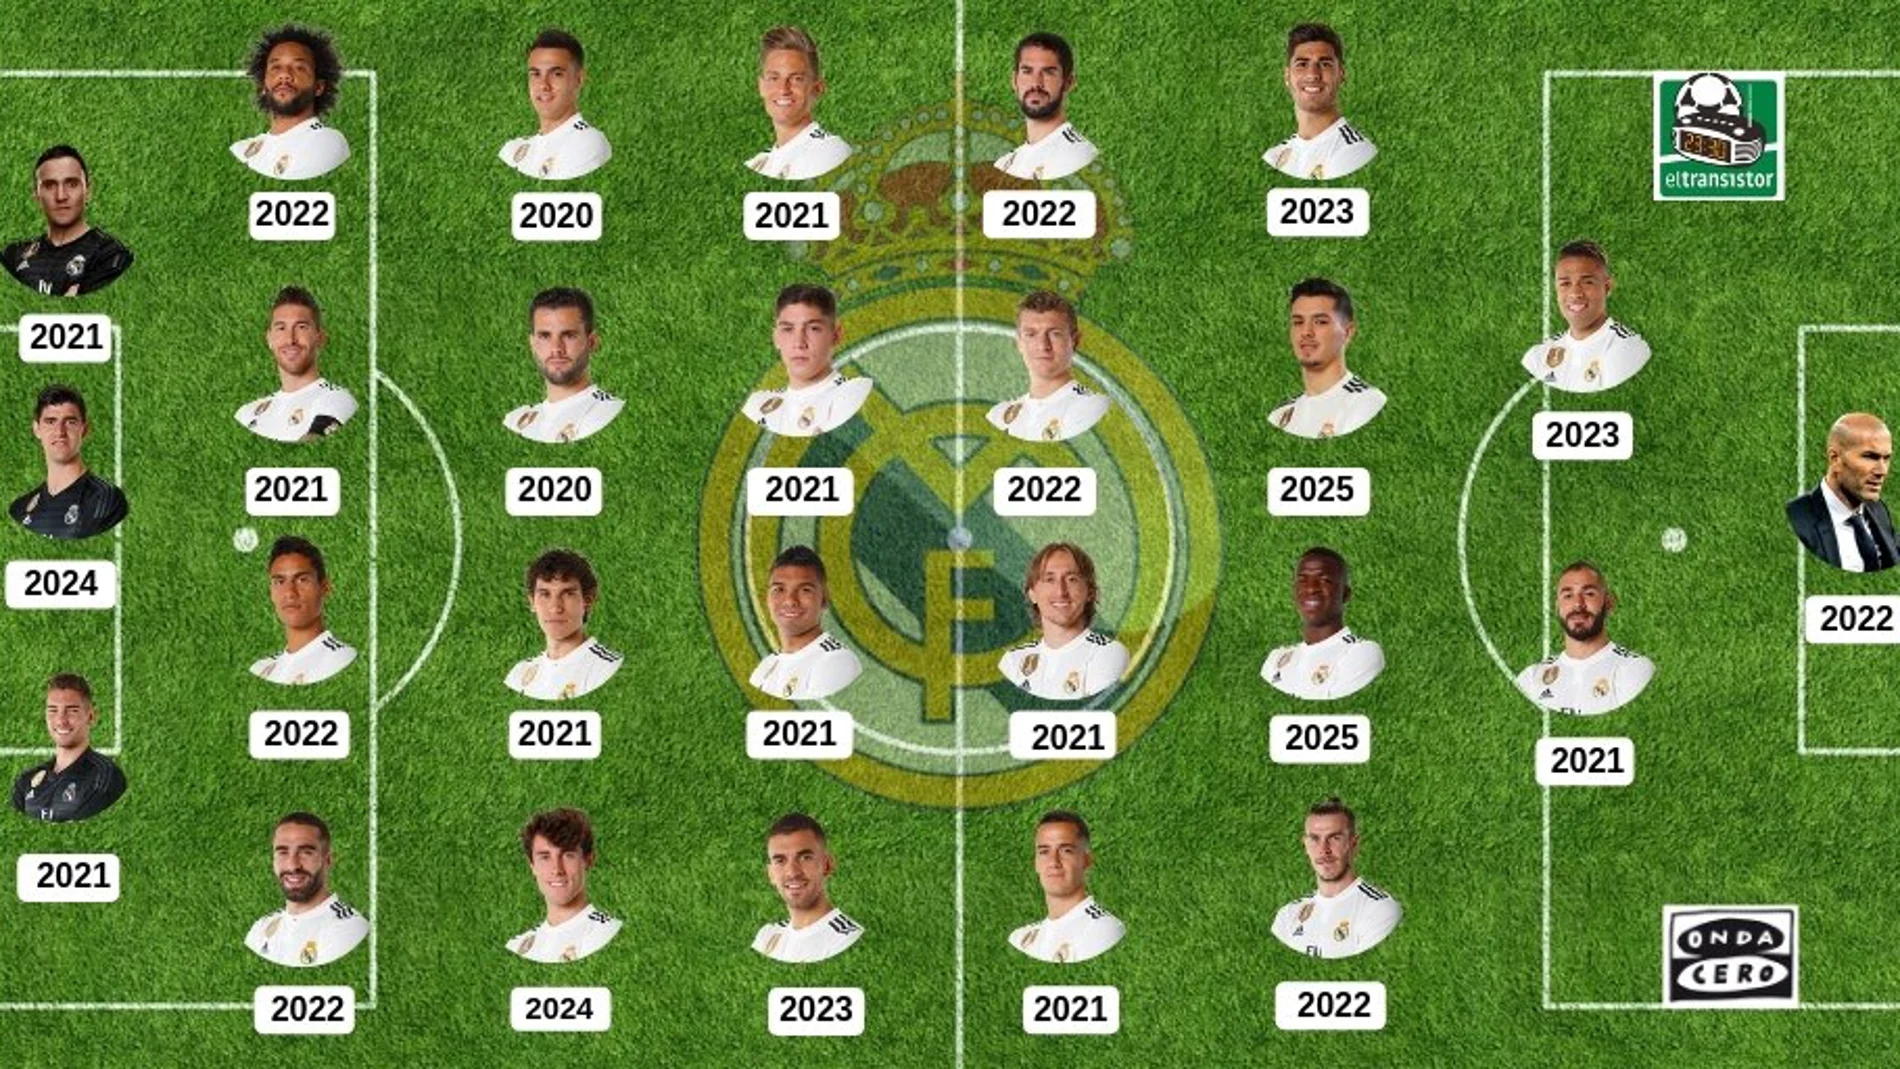 La fecha de finalización de los contratos de los jugadores del Real Madrid